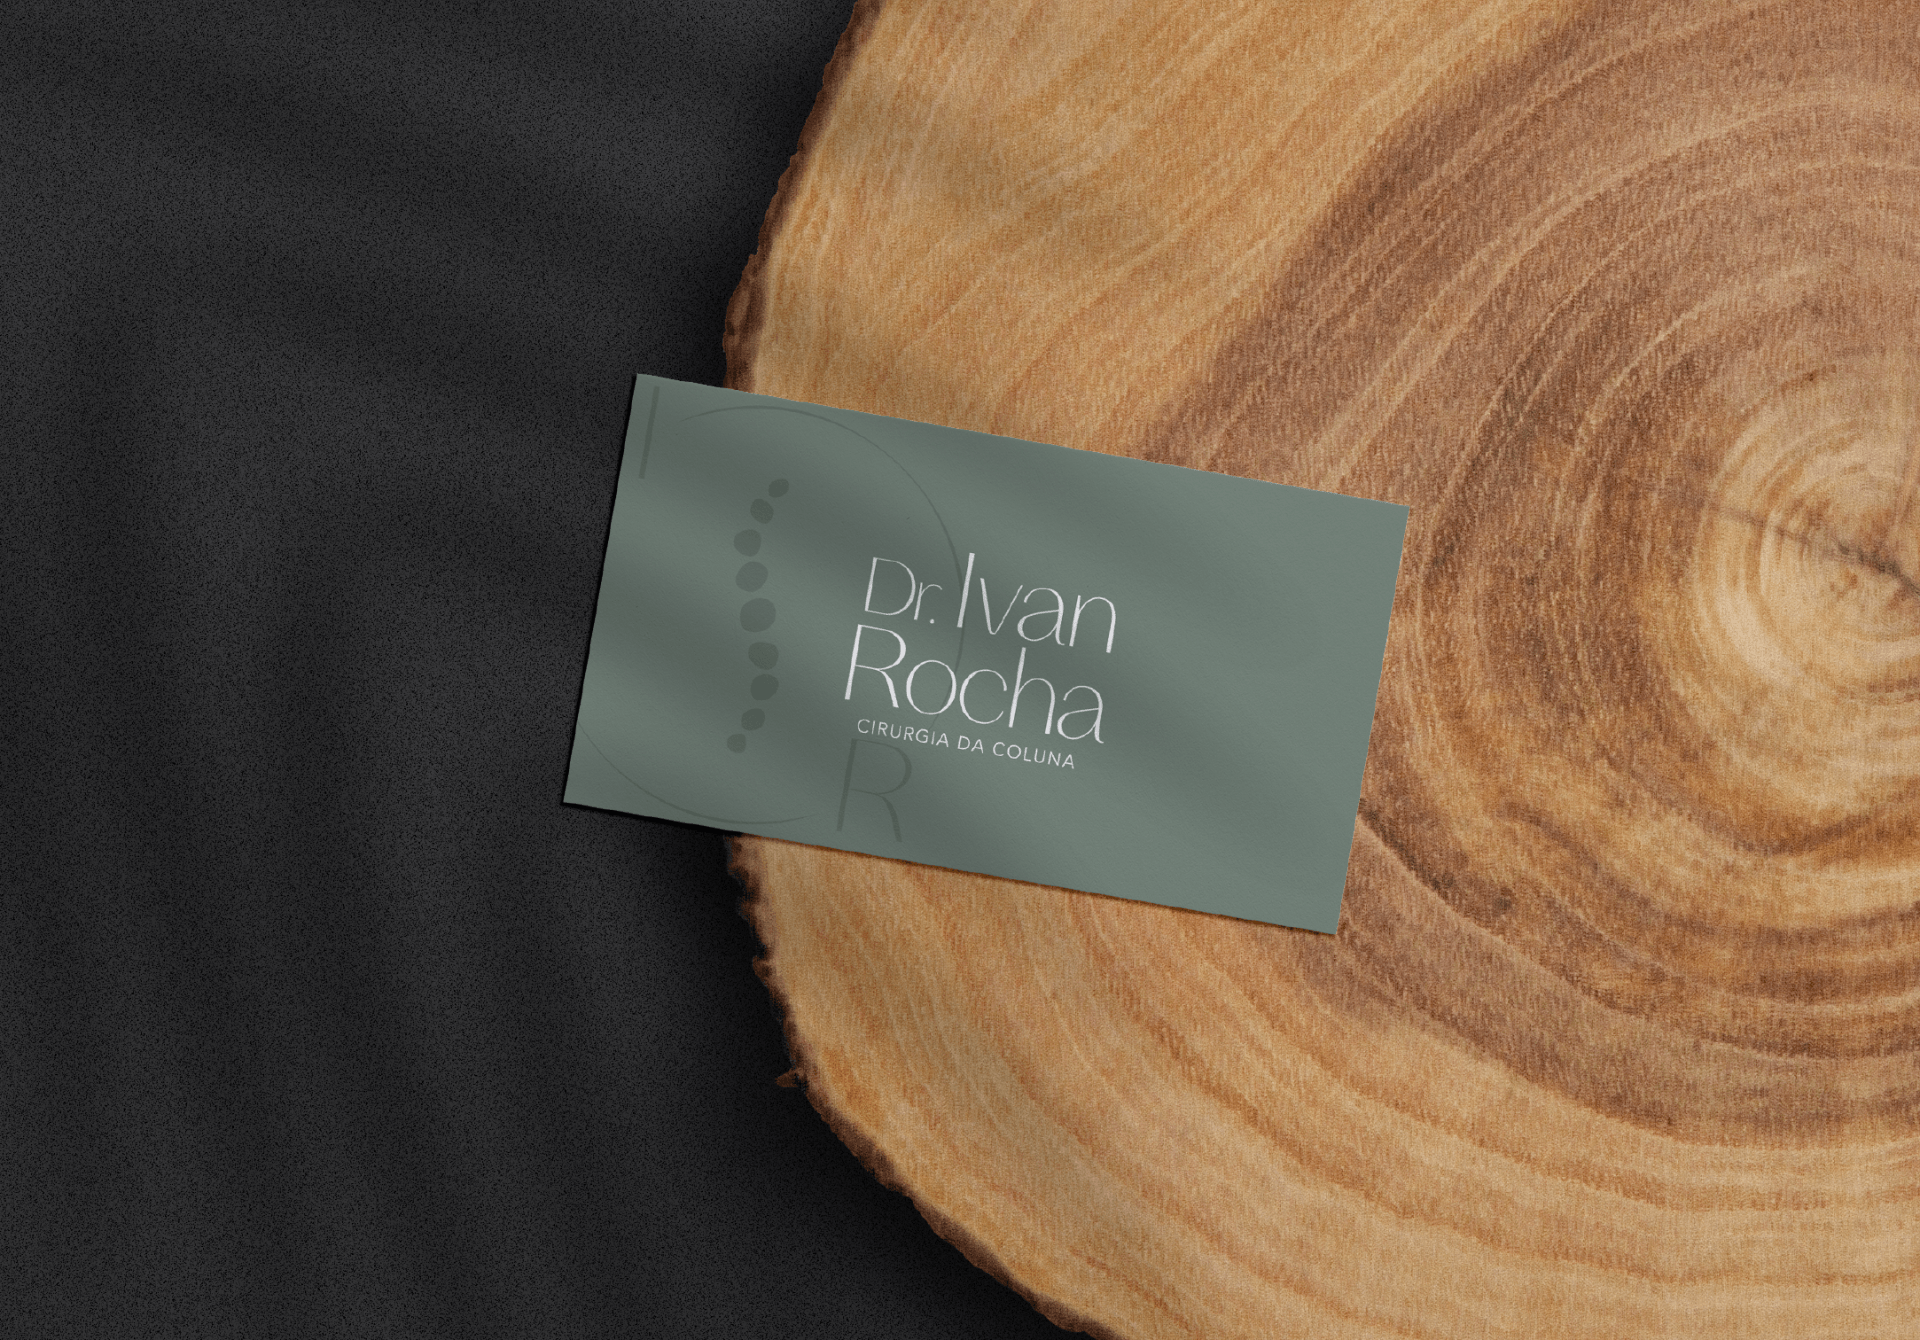 Cartão de visitas verde contendo o logo do Dr. Ivan Rocha em cima de um suporte de madeira.